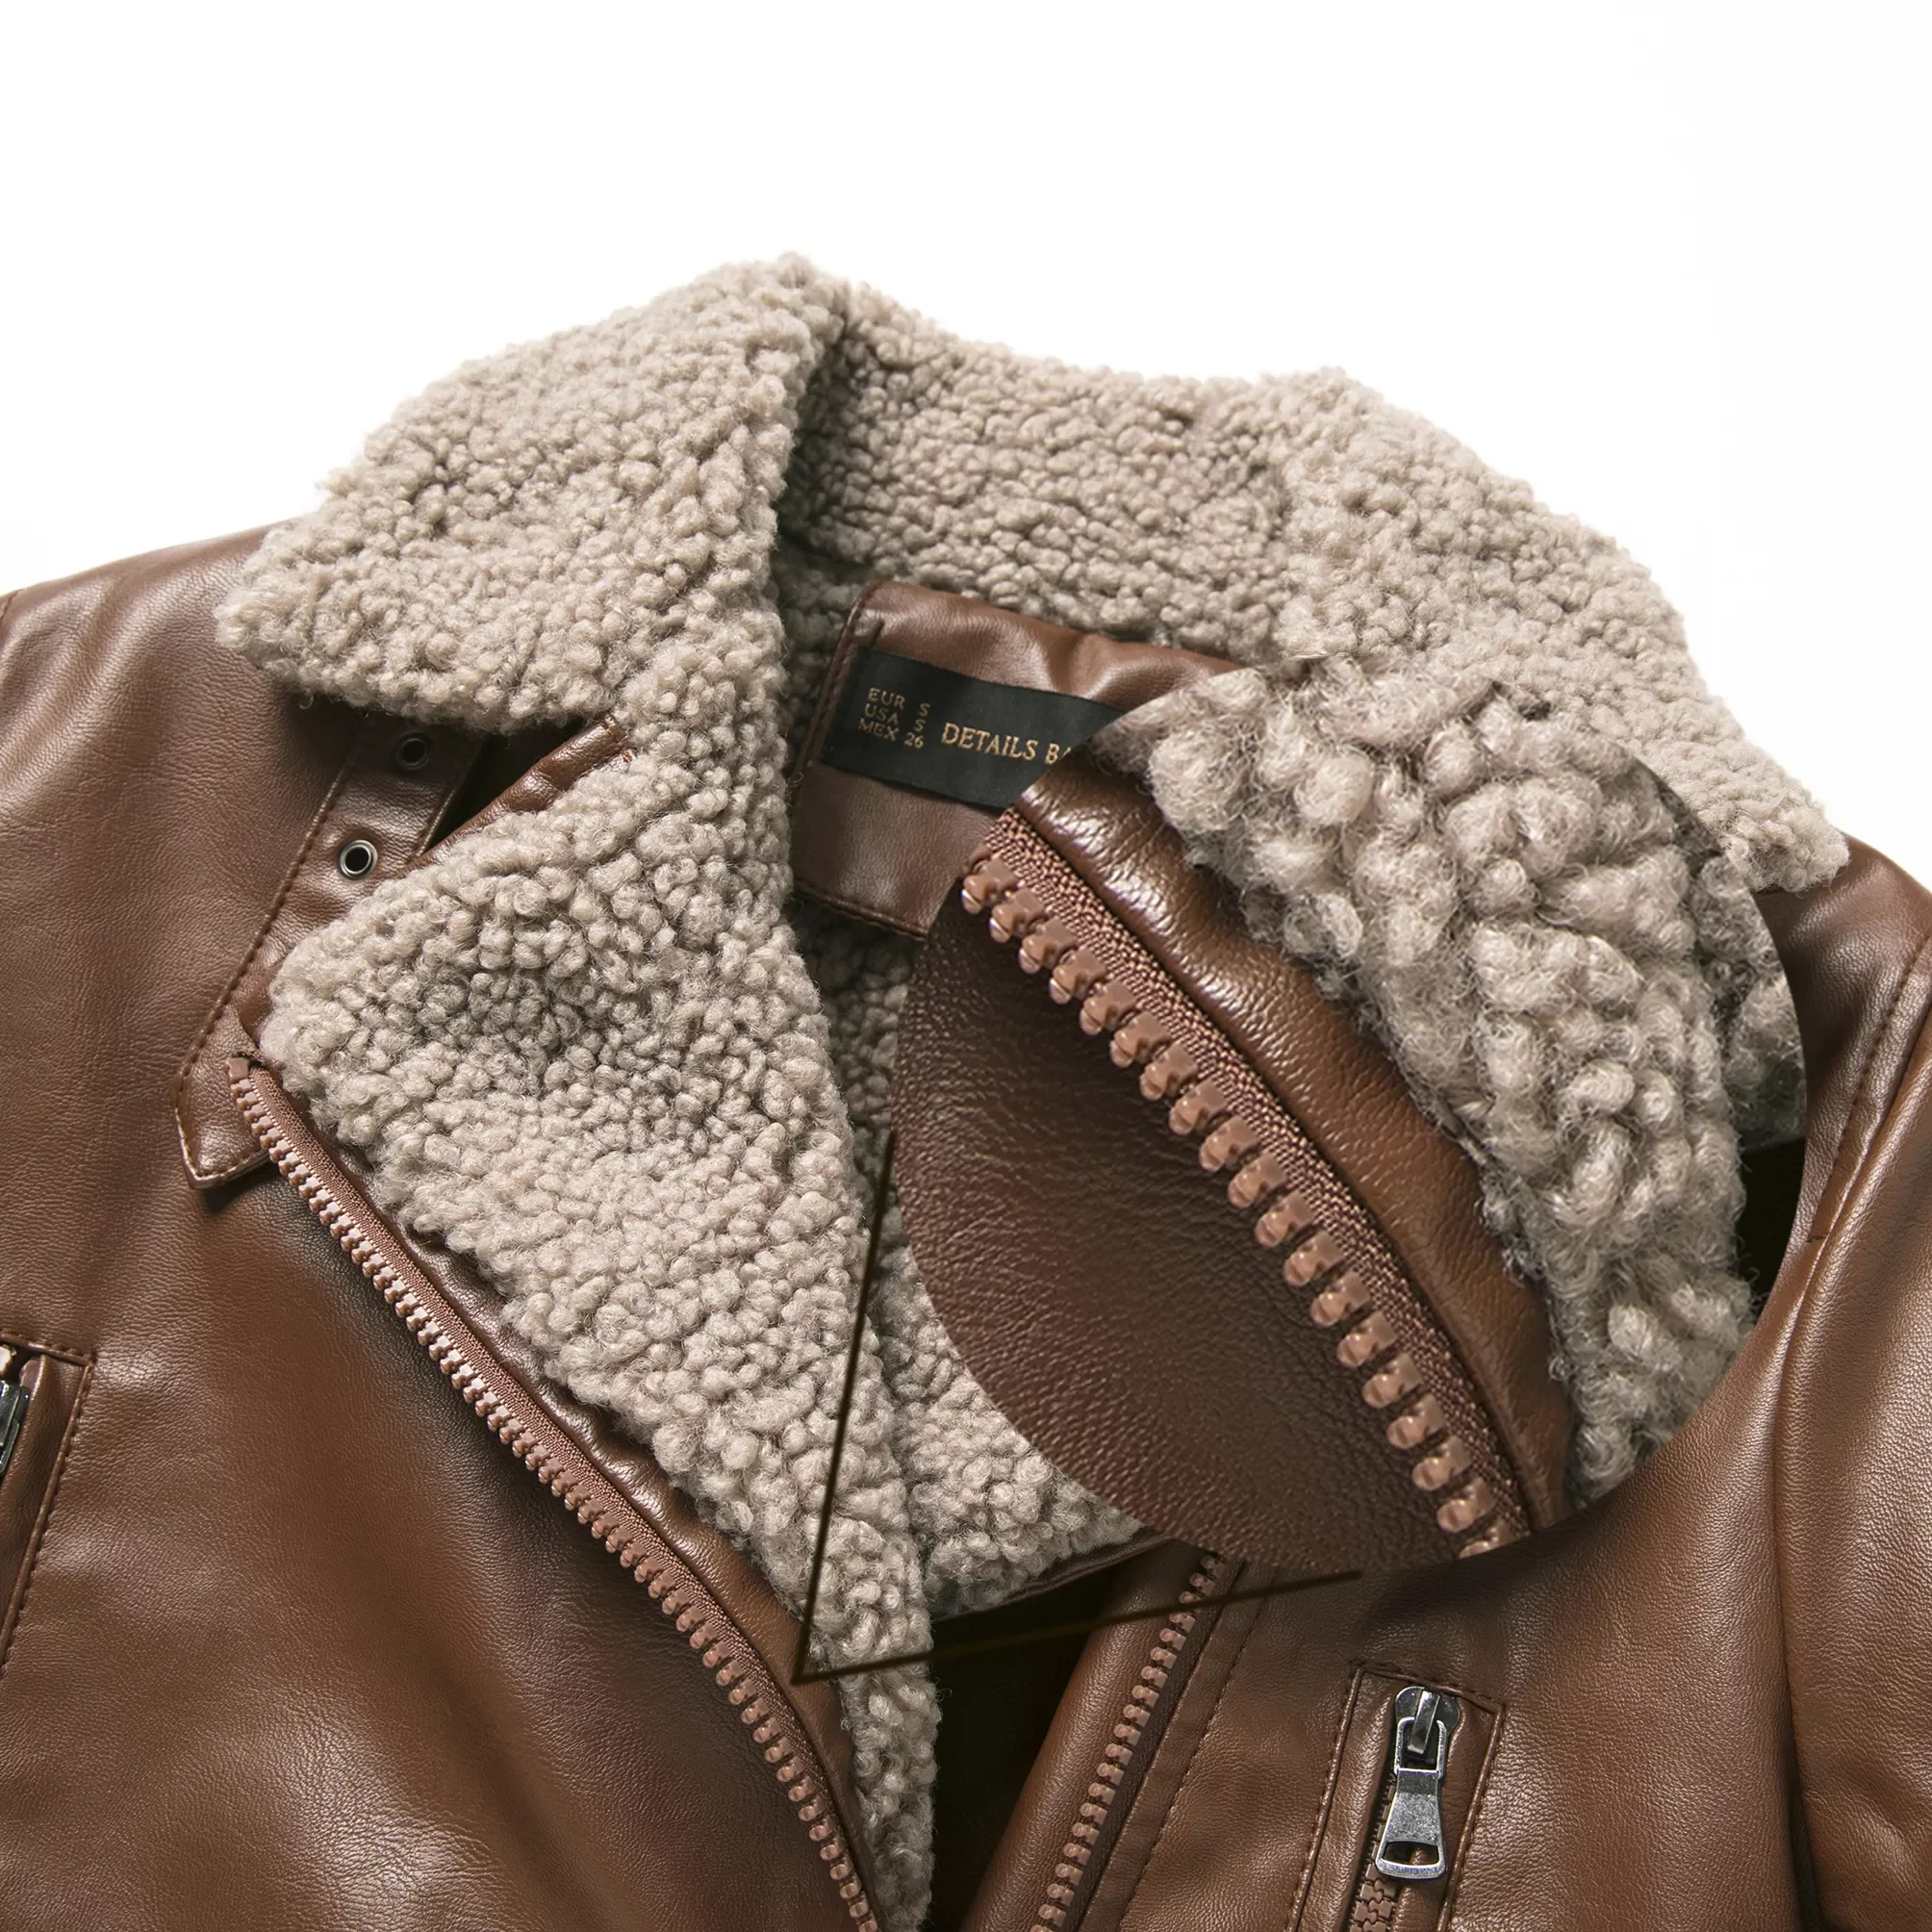 2021 New Women Chic Winter Thick Warm Coffee Faux Sheepskin Leather Teddy Fur Jackets Female Vintage Motor Streetwear Coats Belt enlarge